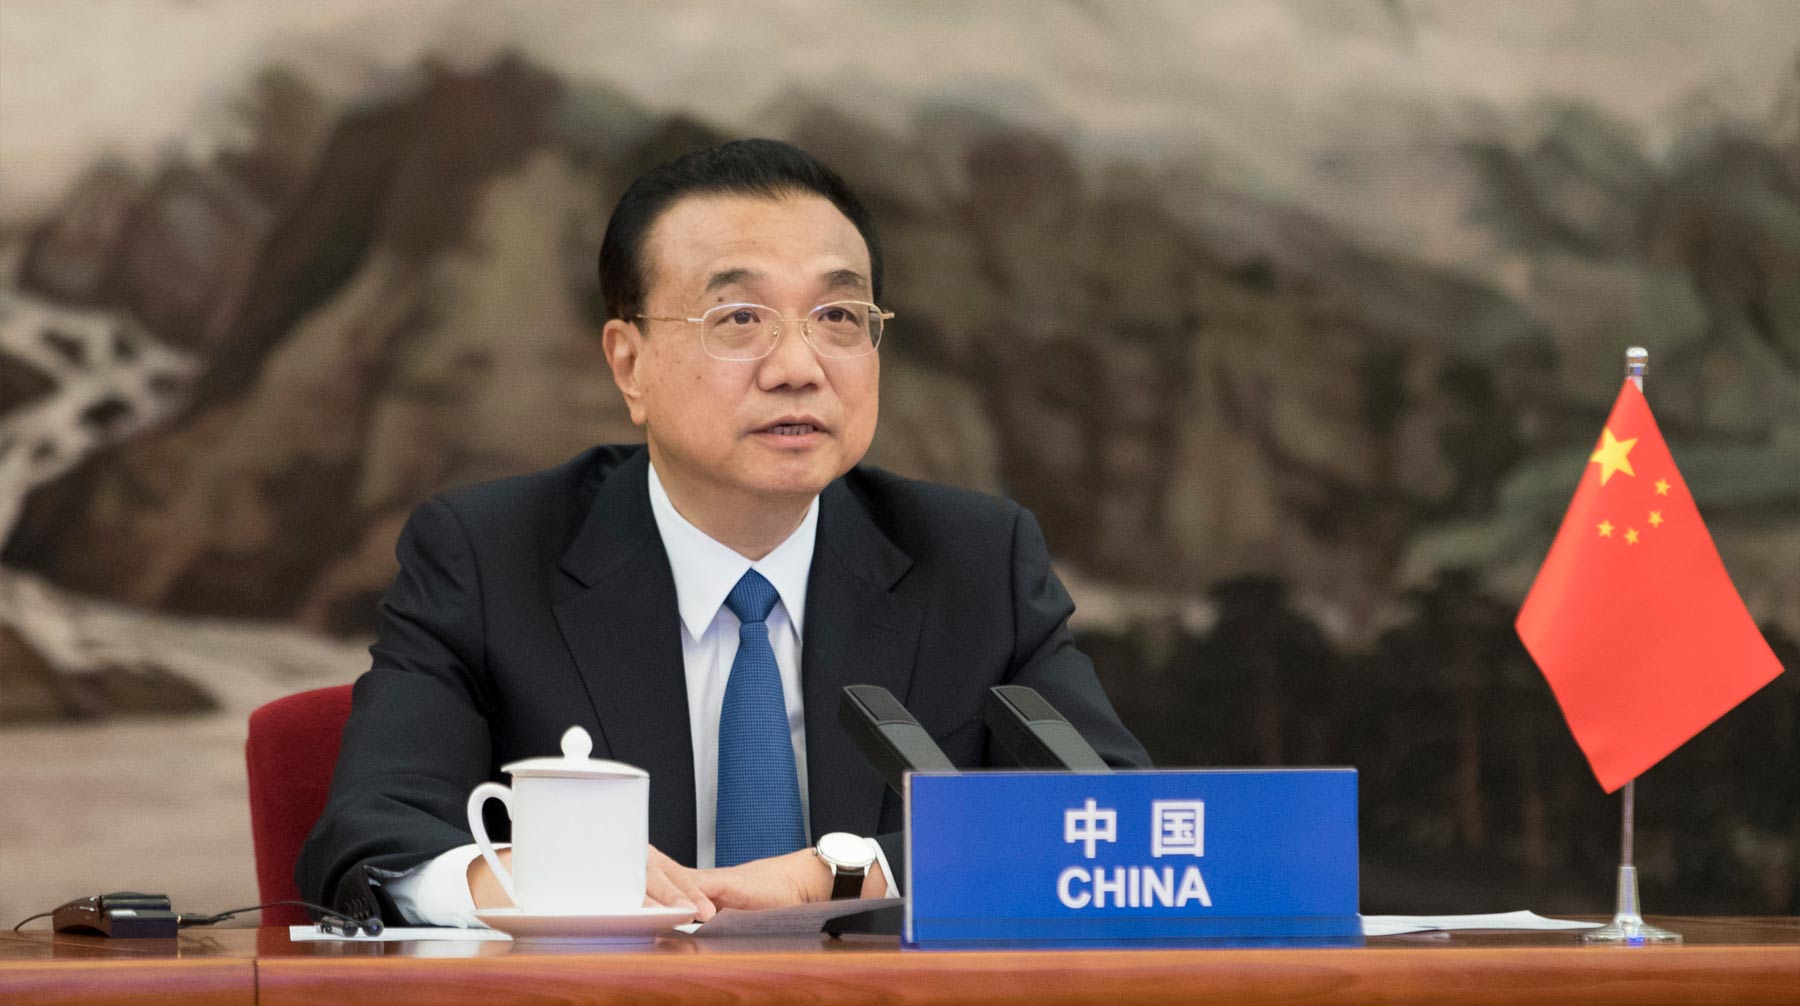 Международное сотрудничество по борьбе с инфекцией продолжится, заявил премьер Госсовета Ли Кэцян Ли Кэцян